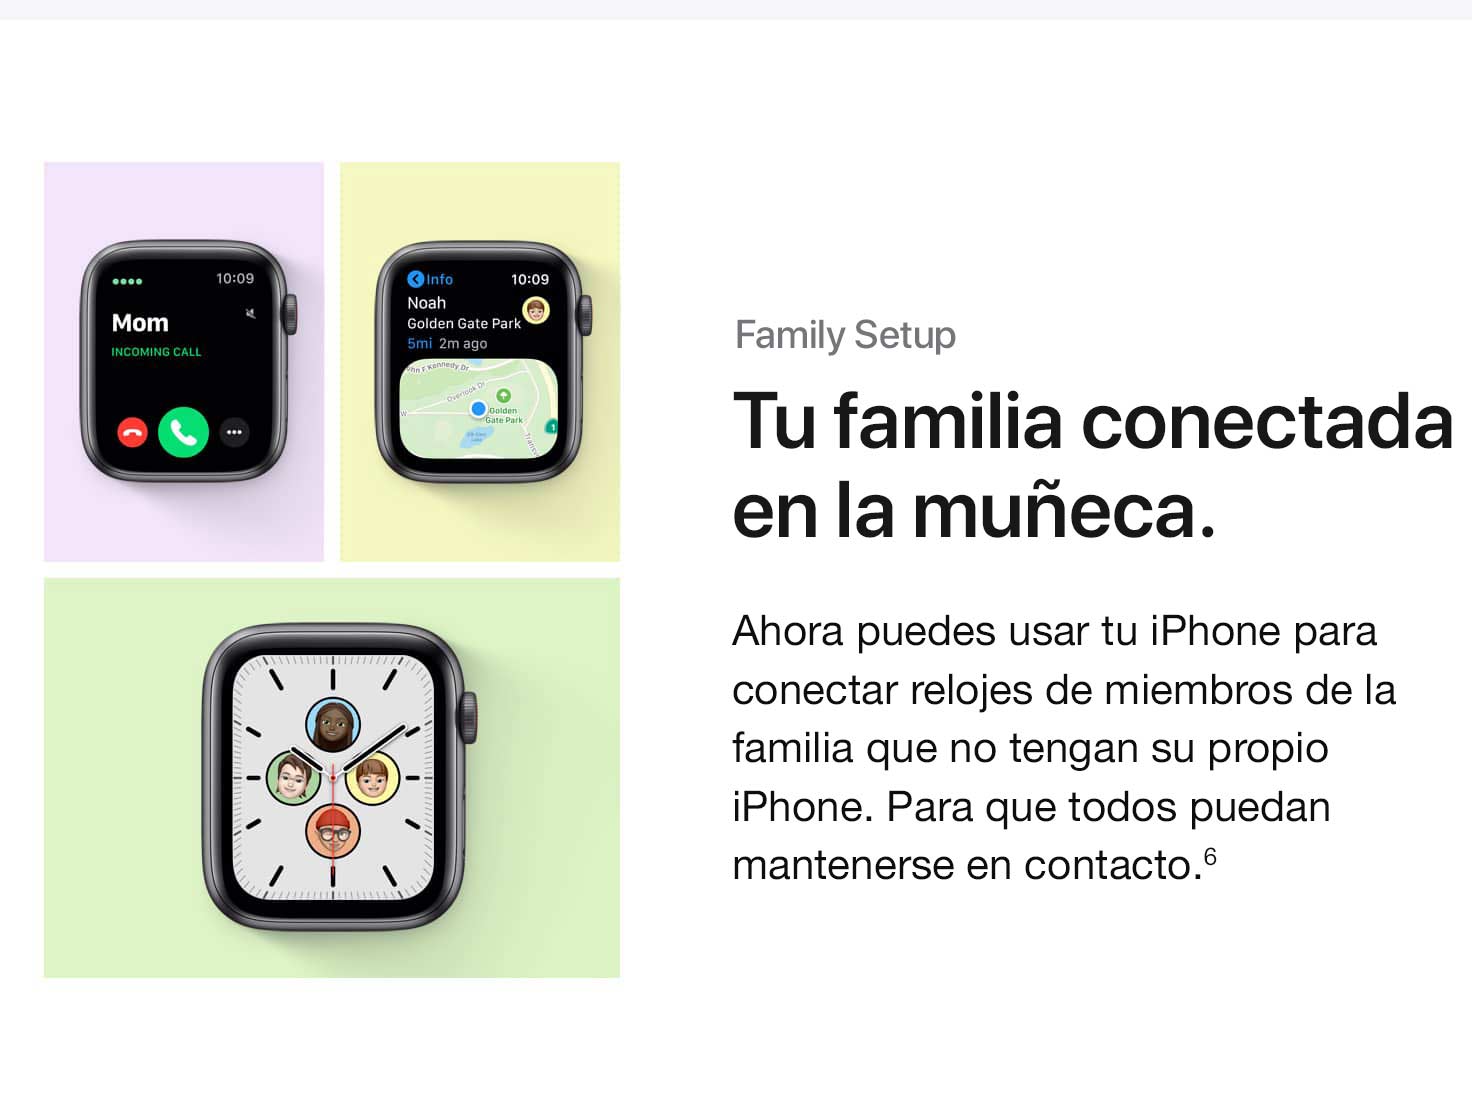 Family Setup. Tu familia conectada en la muñeca. Ahora puedes usar tu iPhone para vincular relojes de familiares que no tienen su propio iPhone. Para que todas puedan mantenerse en contacto.(6)